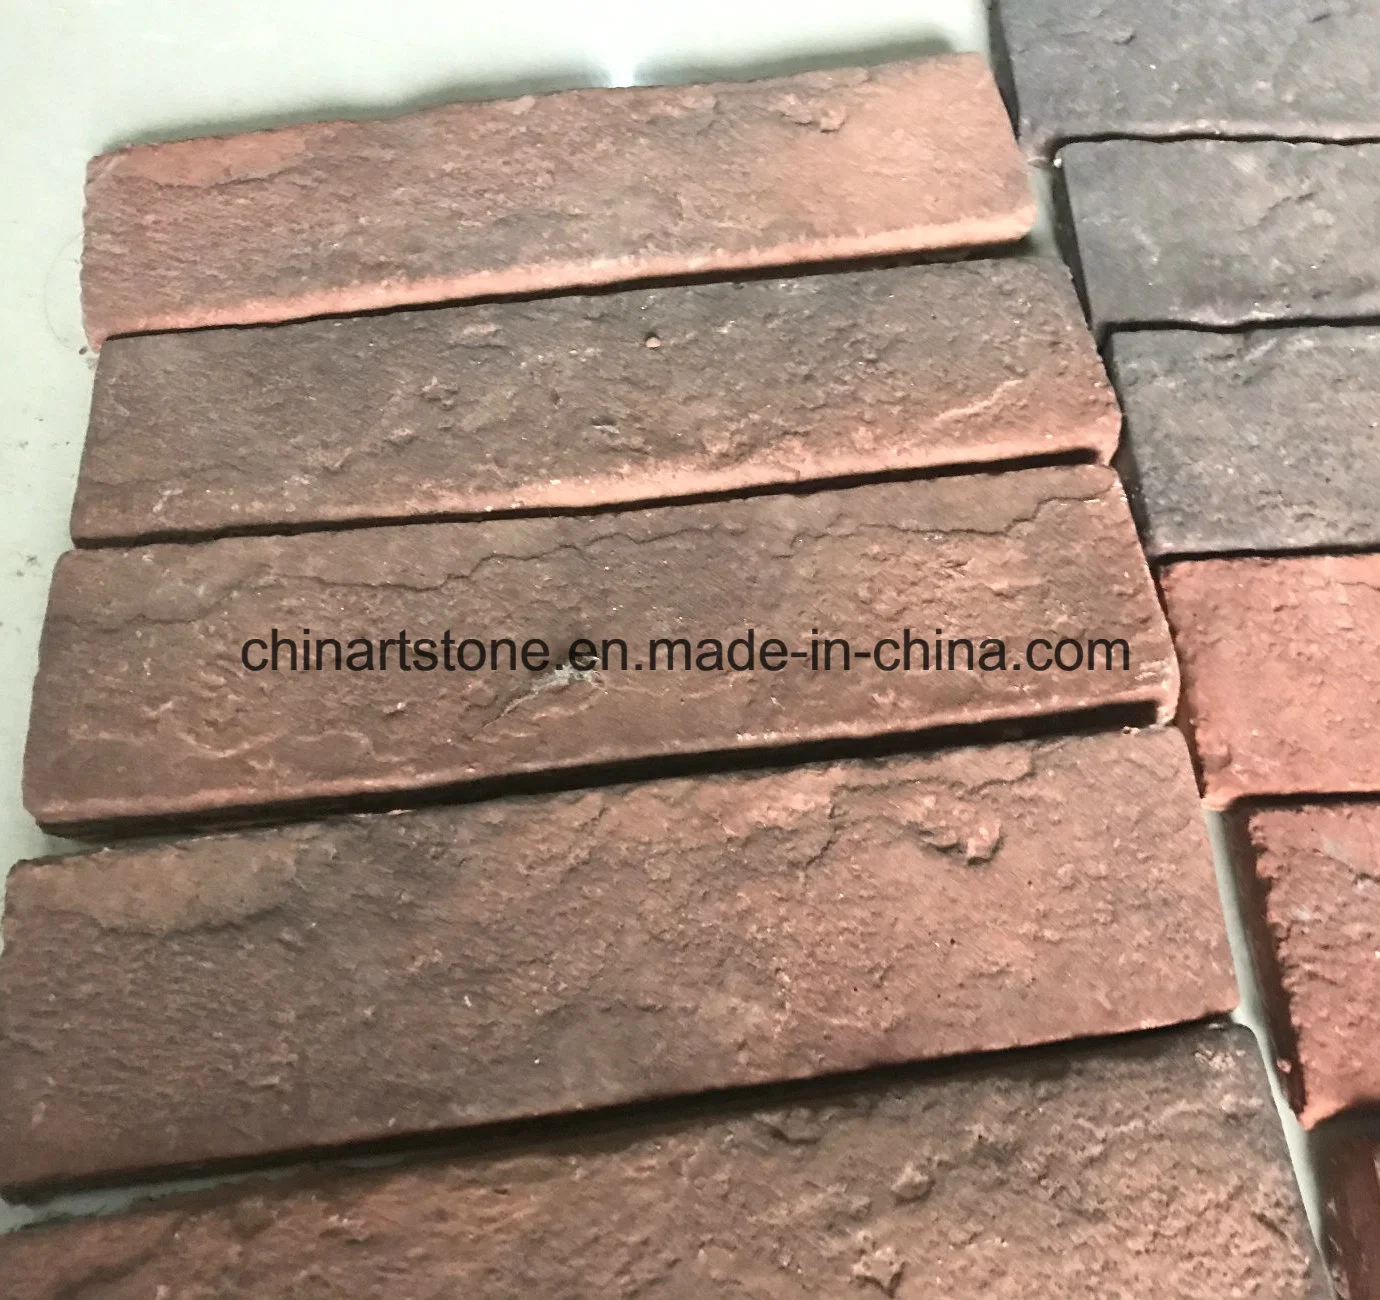 Eco-Friendly Vermelho/Branco/Preto produto cimento cultura artificial de pedra mármore Granito Villa/ Castle parede ou piso (lado a lado com a Austrália teste sem amianto)